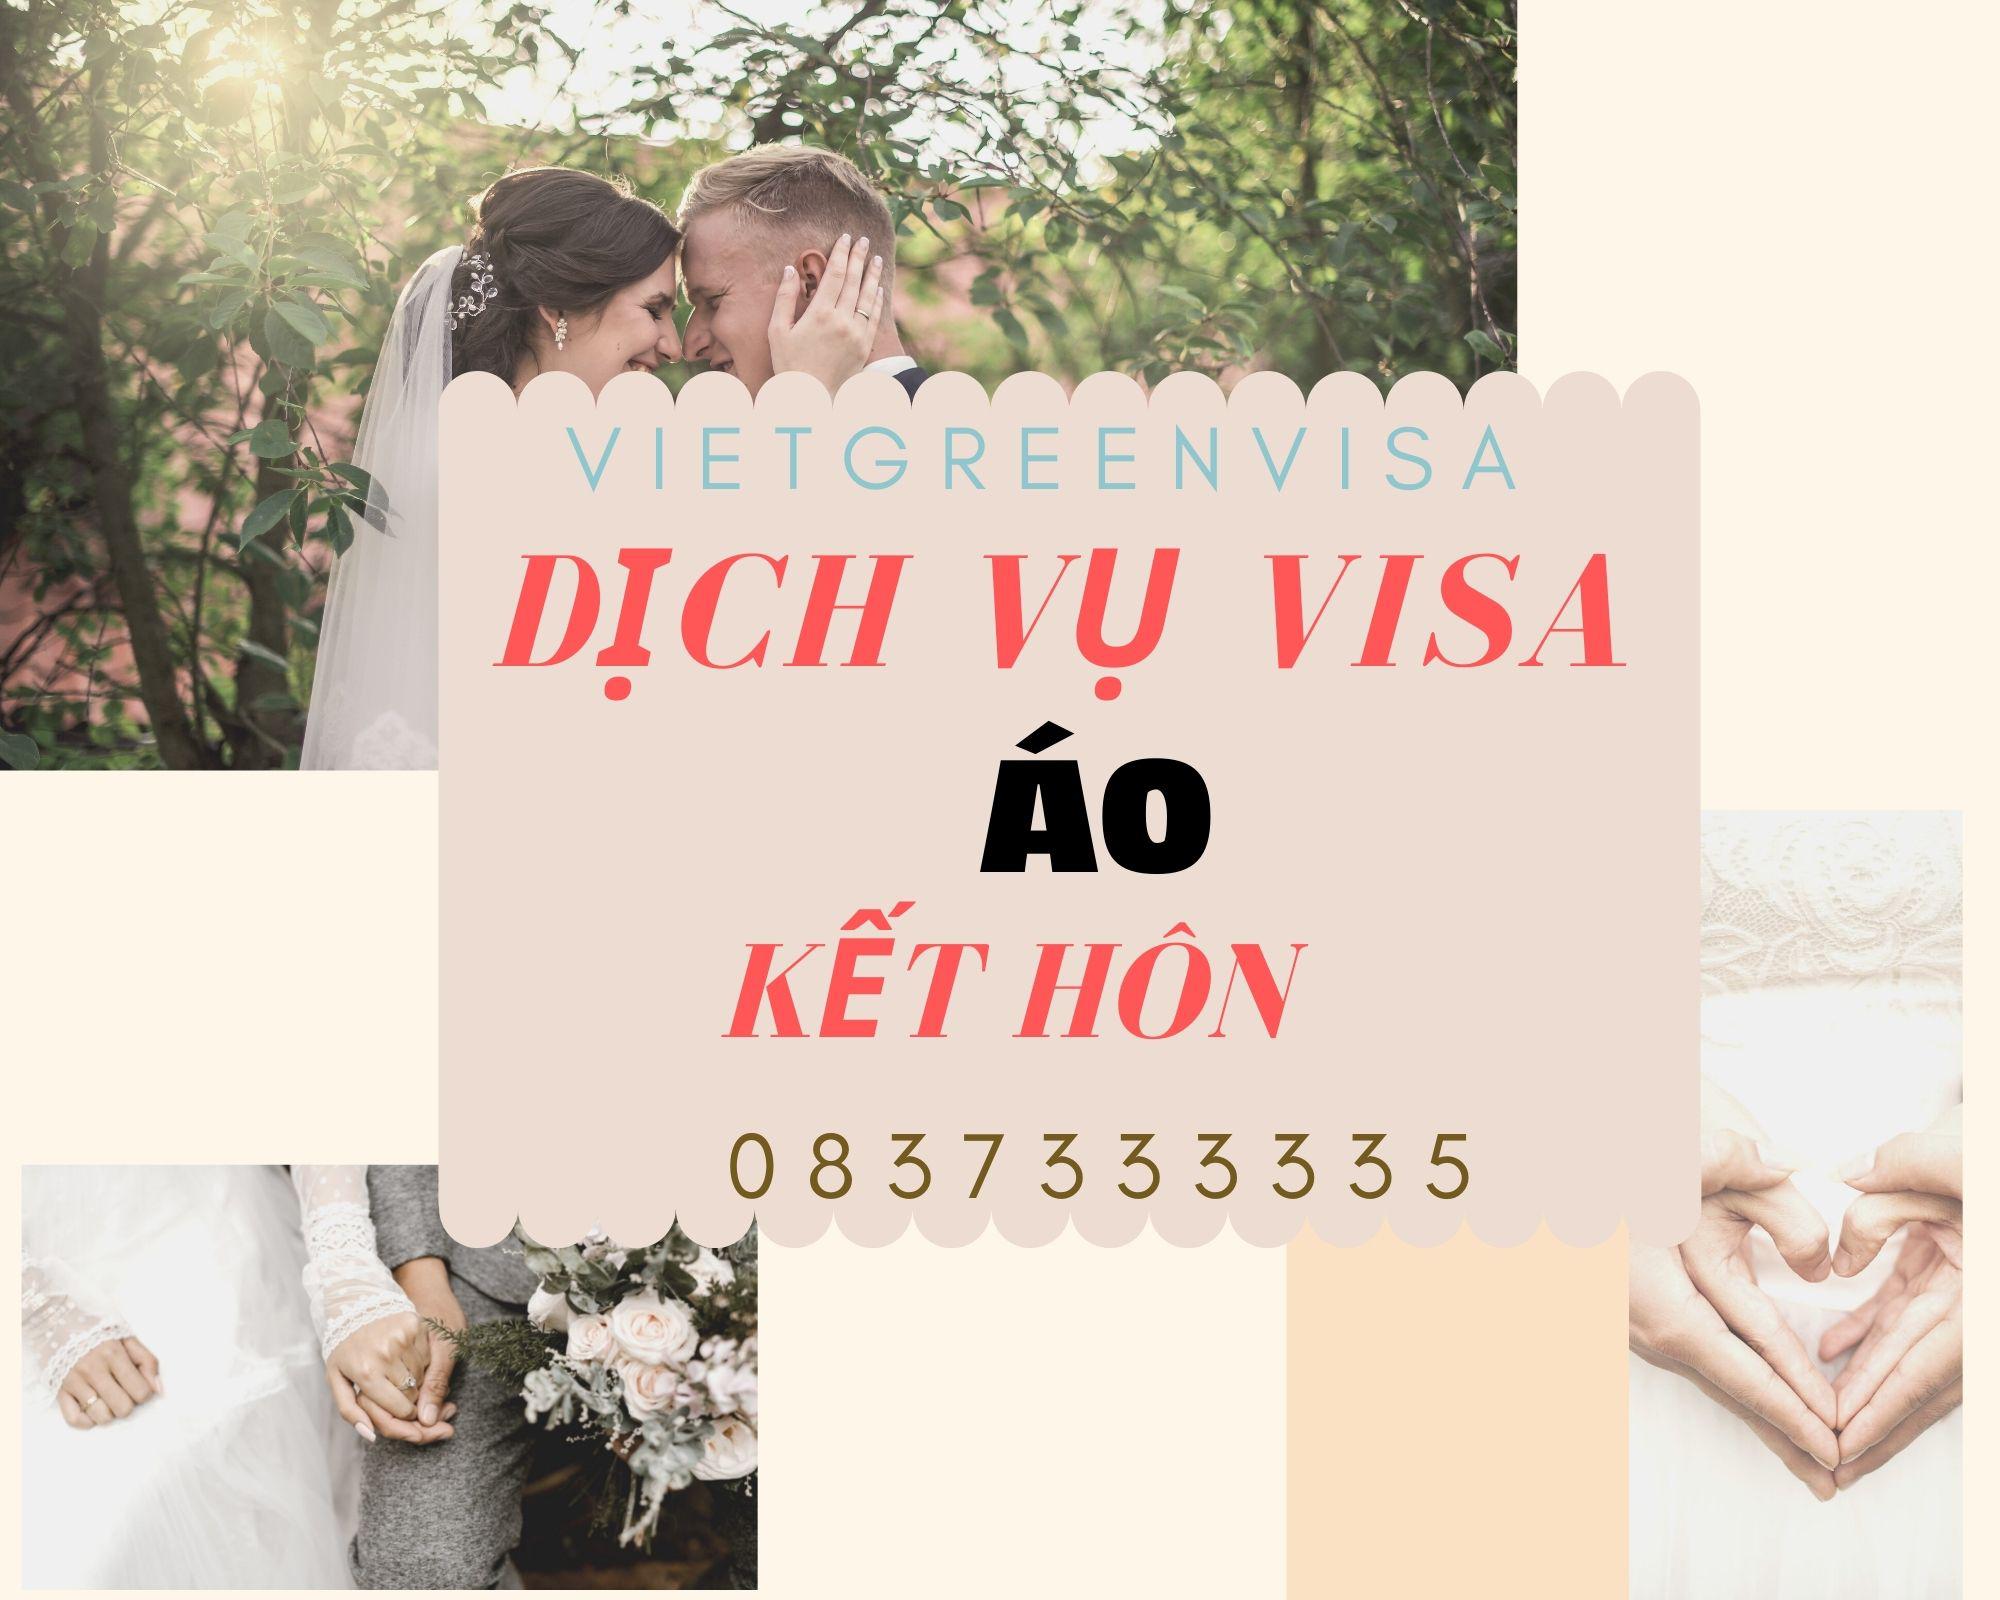 Dịch vụ visa đi Áo kết hôn nhanh chóng tại Viet Green Visa